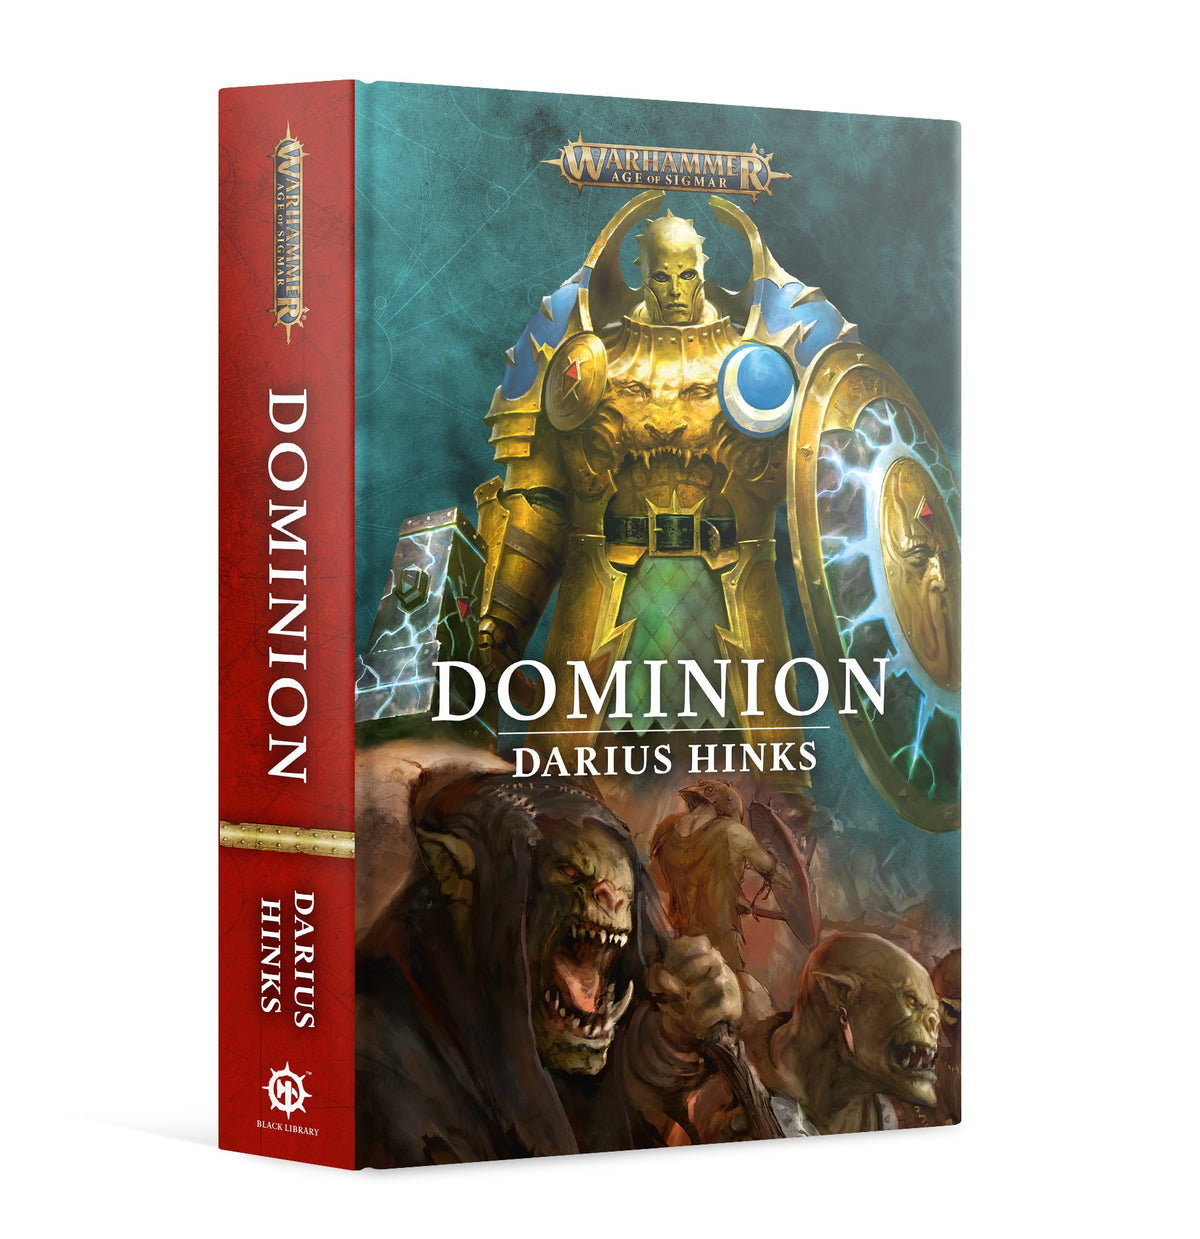 Dominon (Novel HB)